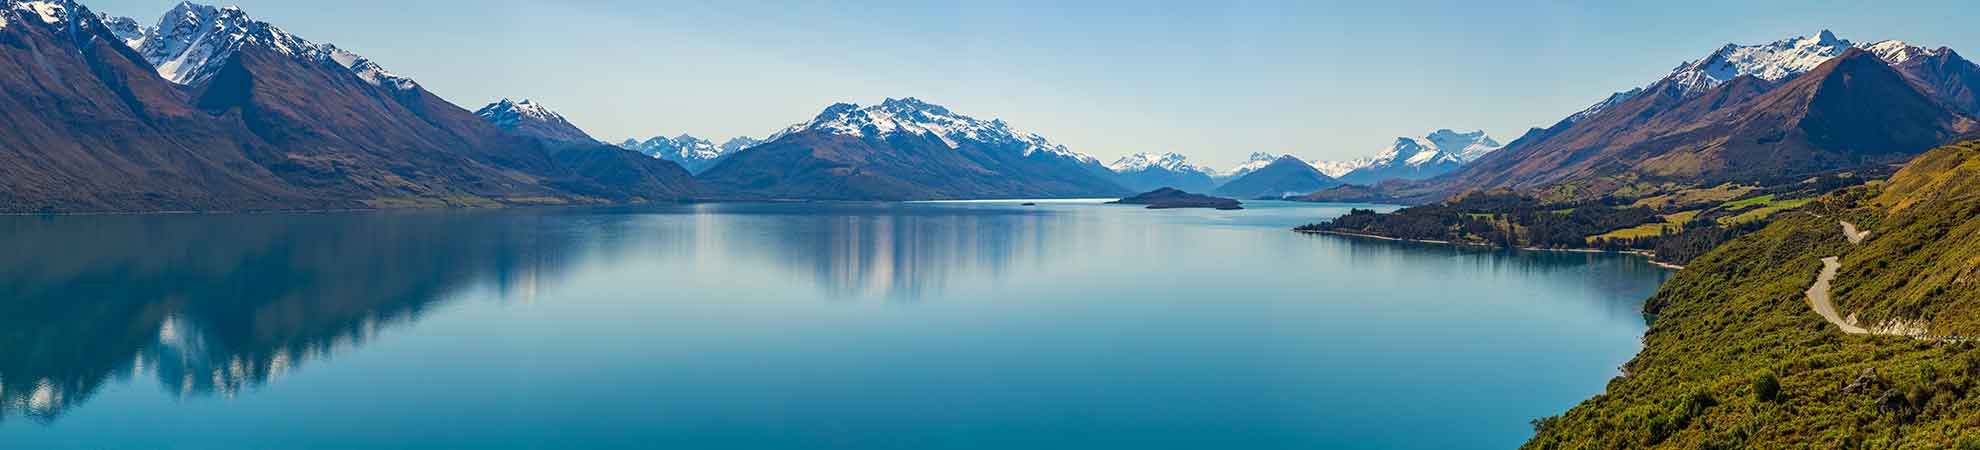 Le paysage de la Nouvelle-Zélande: océan, montagnes et fjords font seulement une patrie des paysages splendides de ce pays